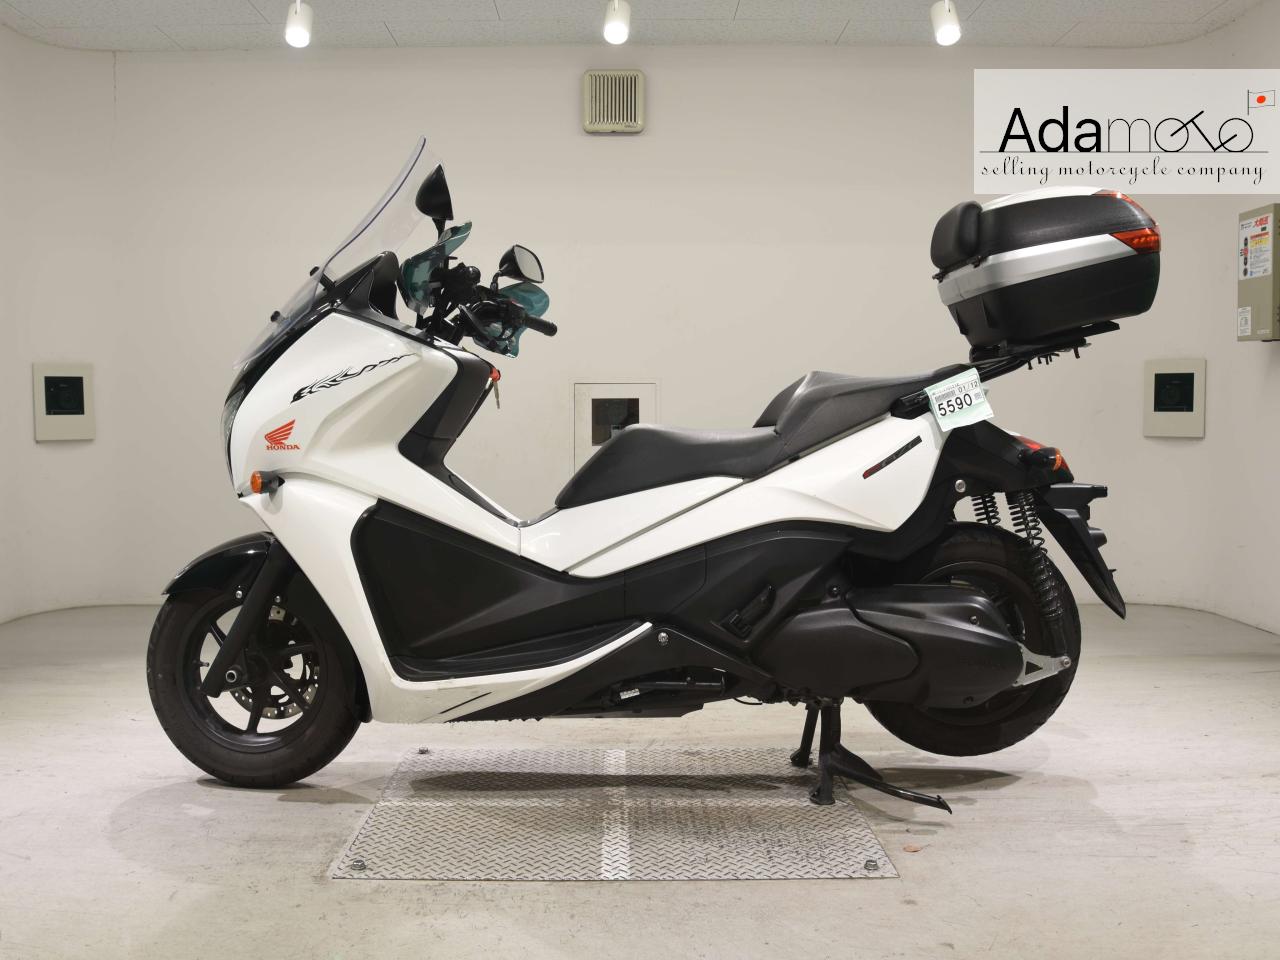 Honda FAZE - Adamoto - Motorcycles from Japan